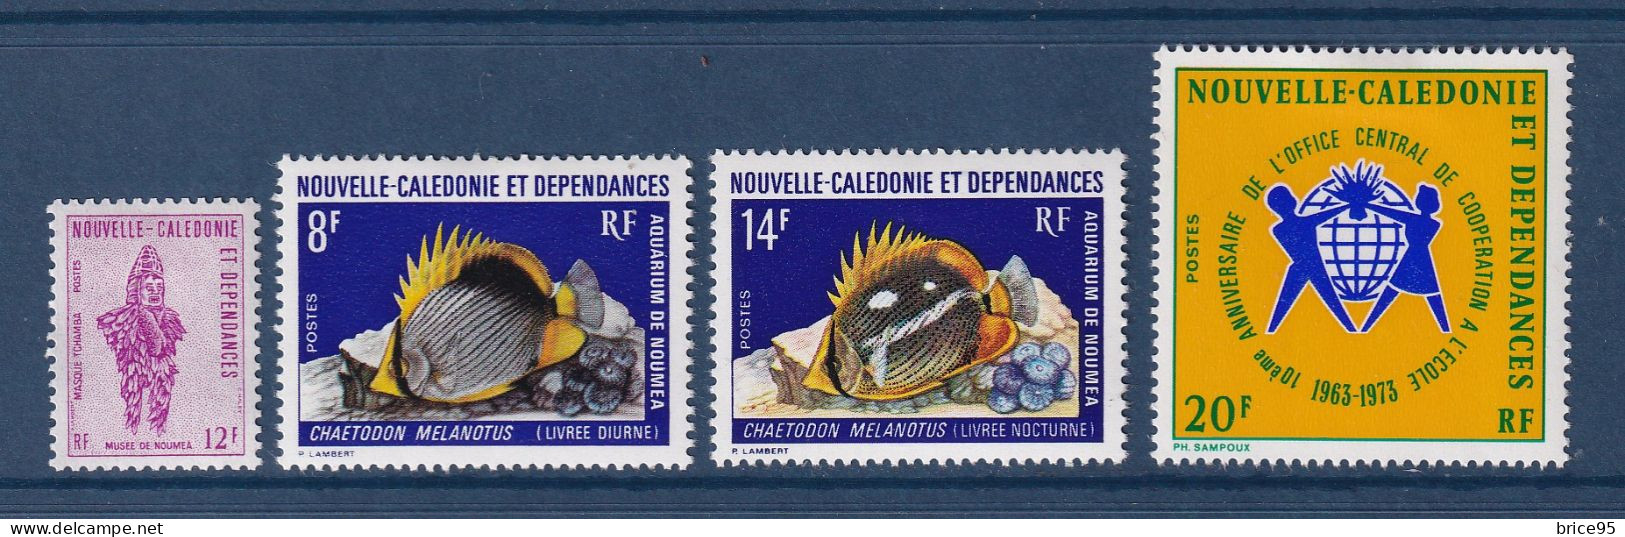 Nouvelle Calédonie - YT N° 386 à 389 * - Neuf Avec Charnière - Année Complète - 1973 - Años Completos